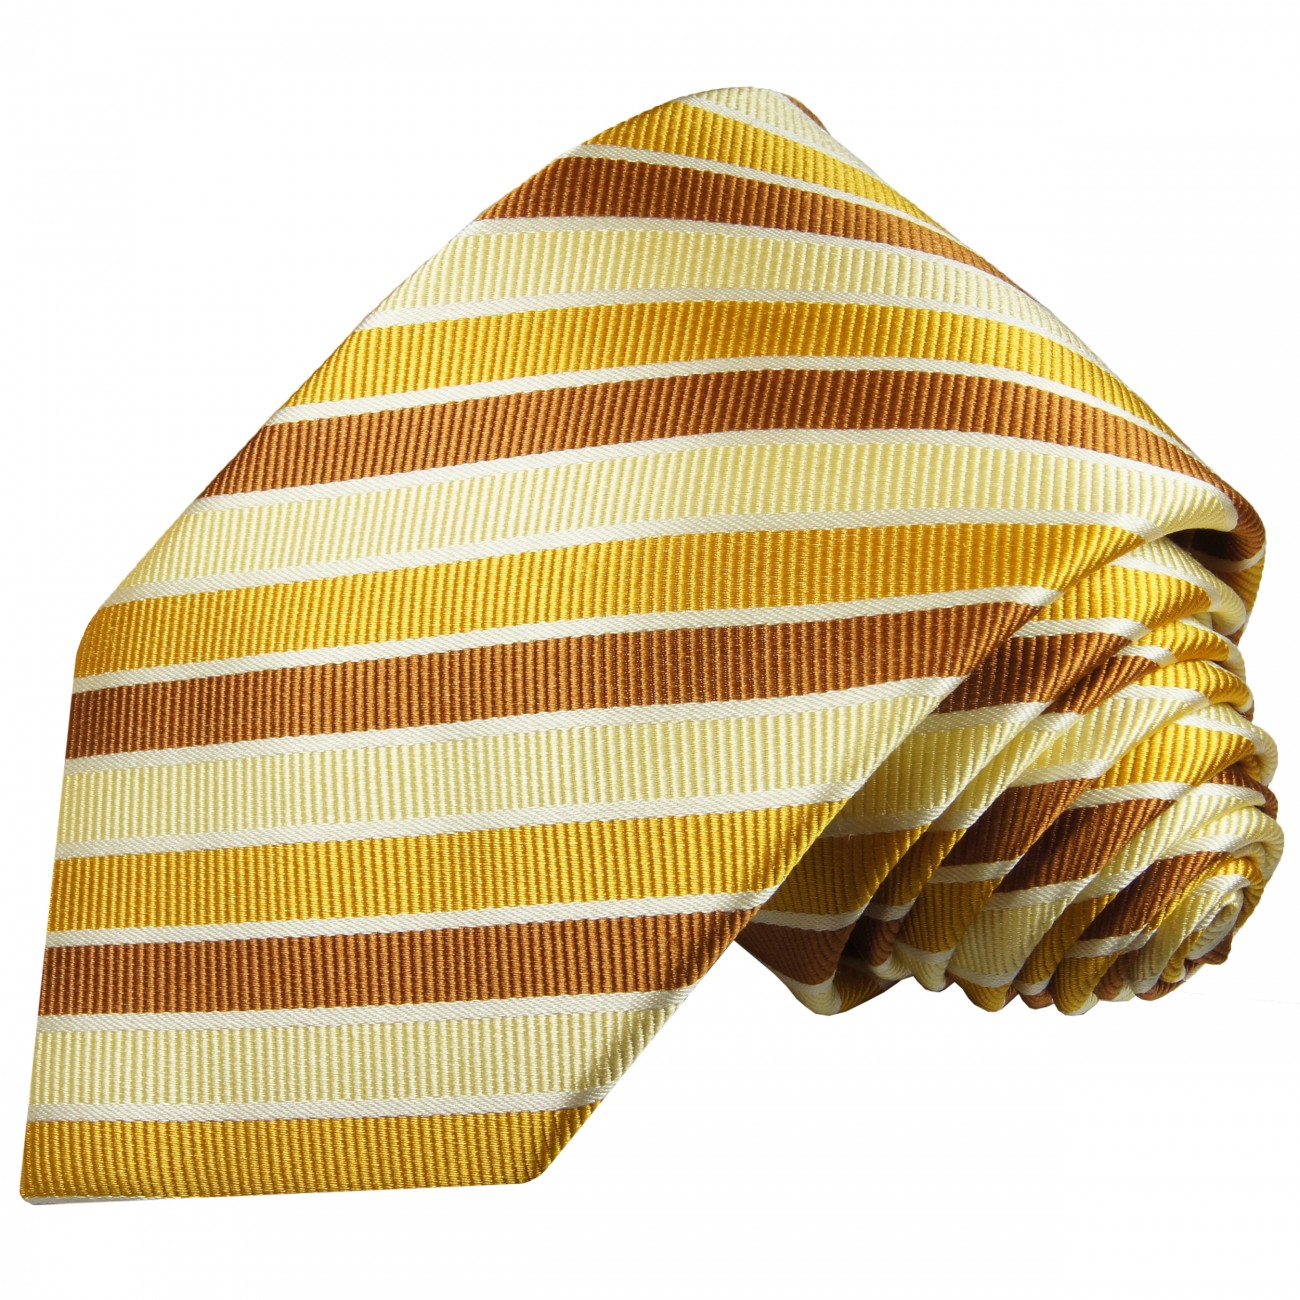 Krawatte gelb gold braun gestreift